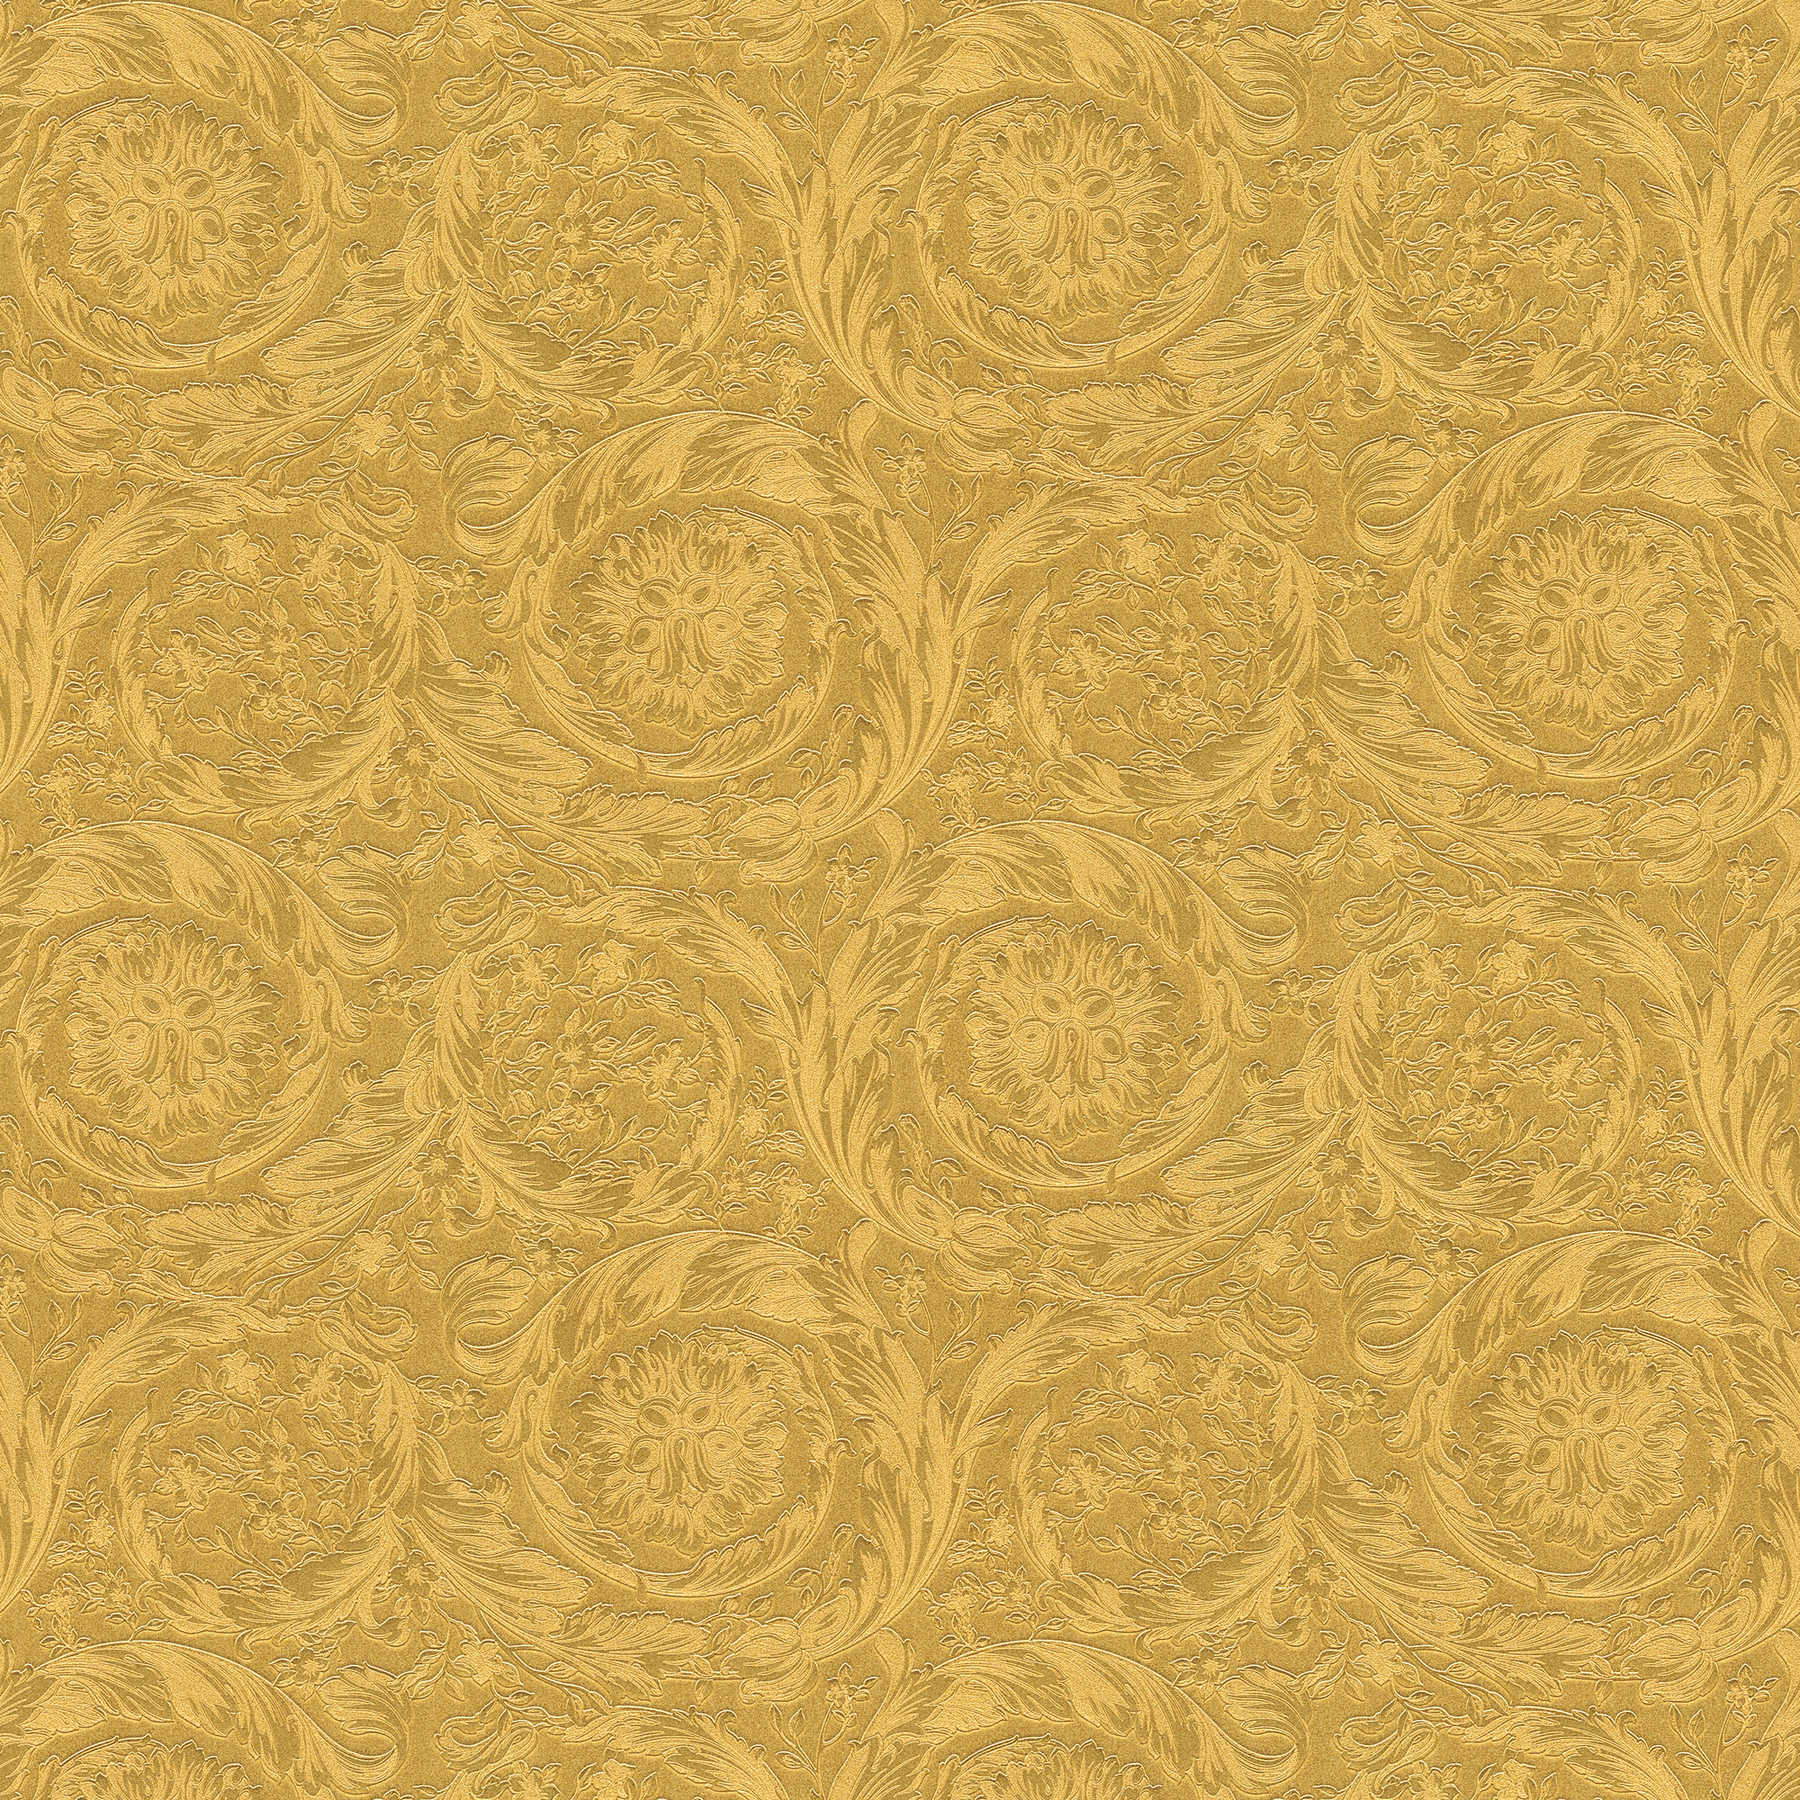 Golden VERSACE wallpaper shimmer effects - gold, yellow
